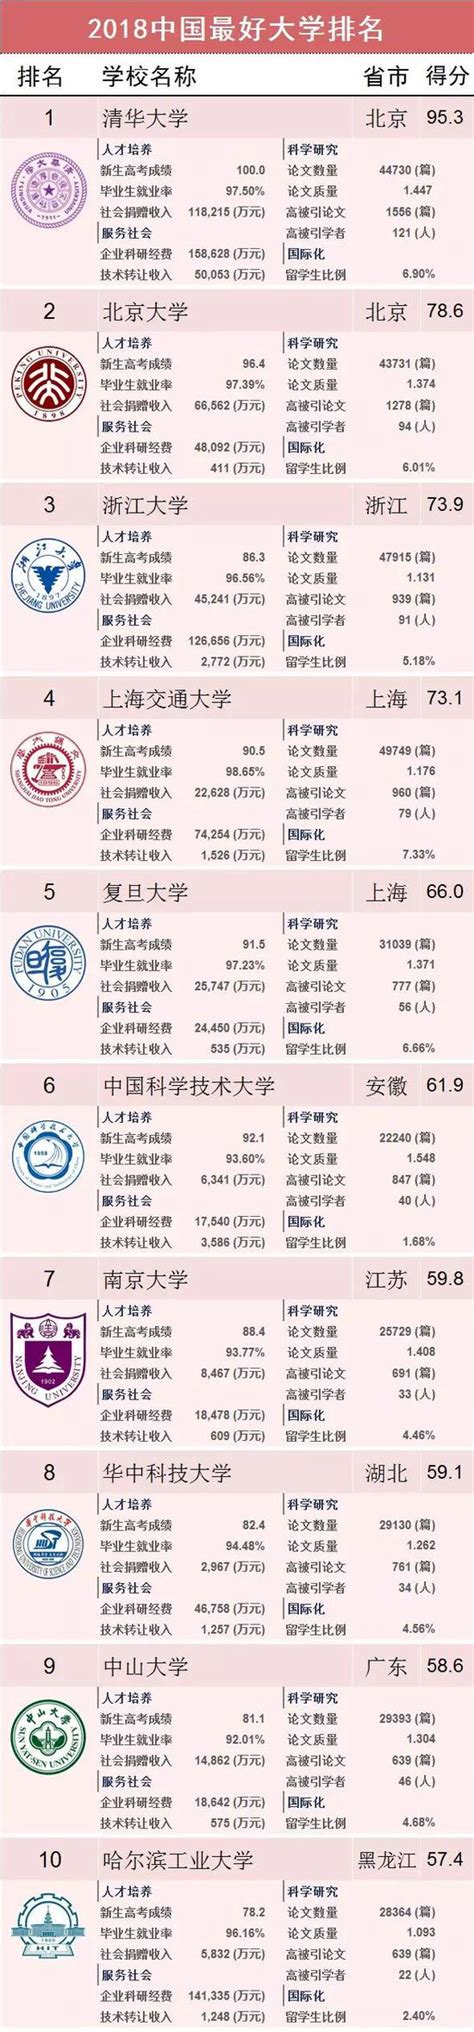 2018中国最好大学排名 清北浙大位列三甲|大学排名_新浪财经_新浪网